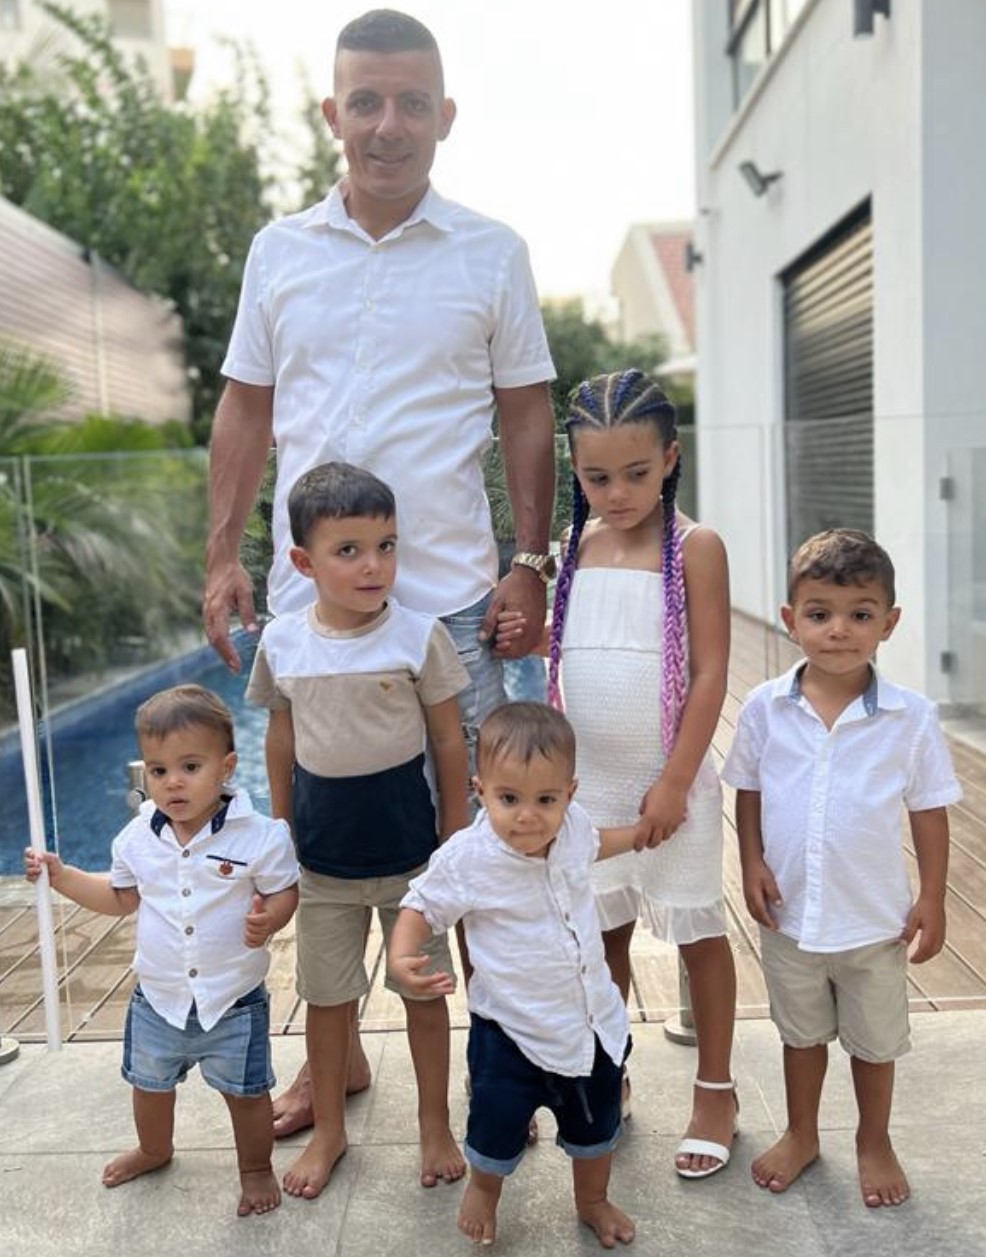 דני גבעתי עורך דין בשירות המאפיה עם 5 ילדים